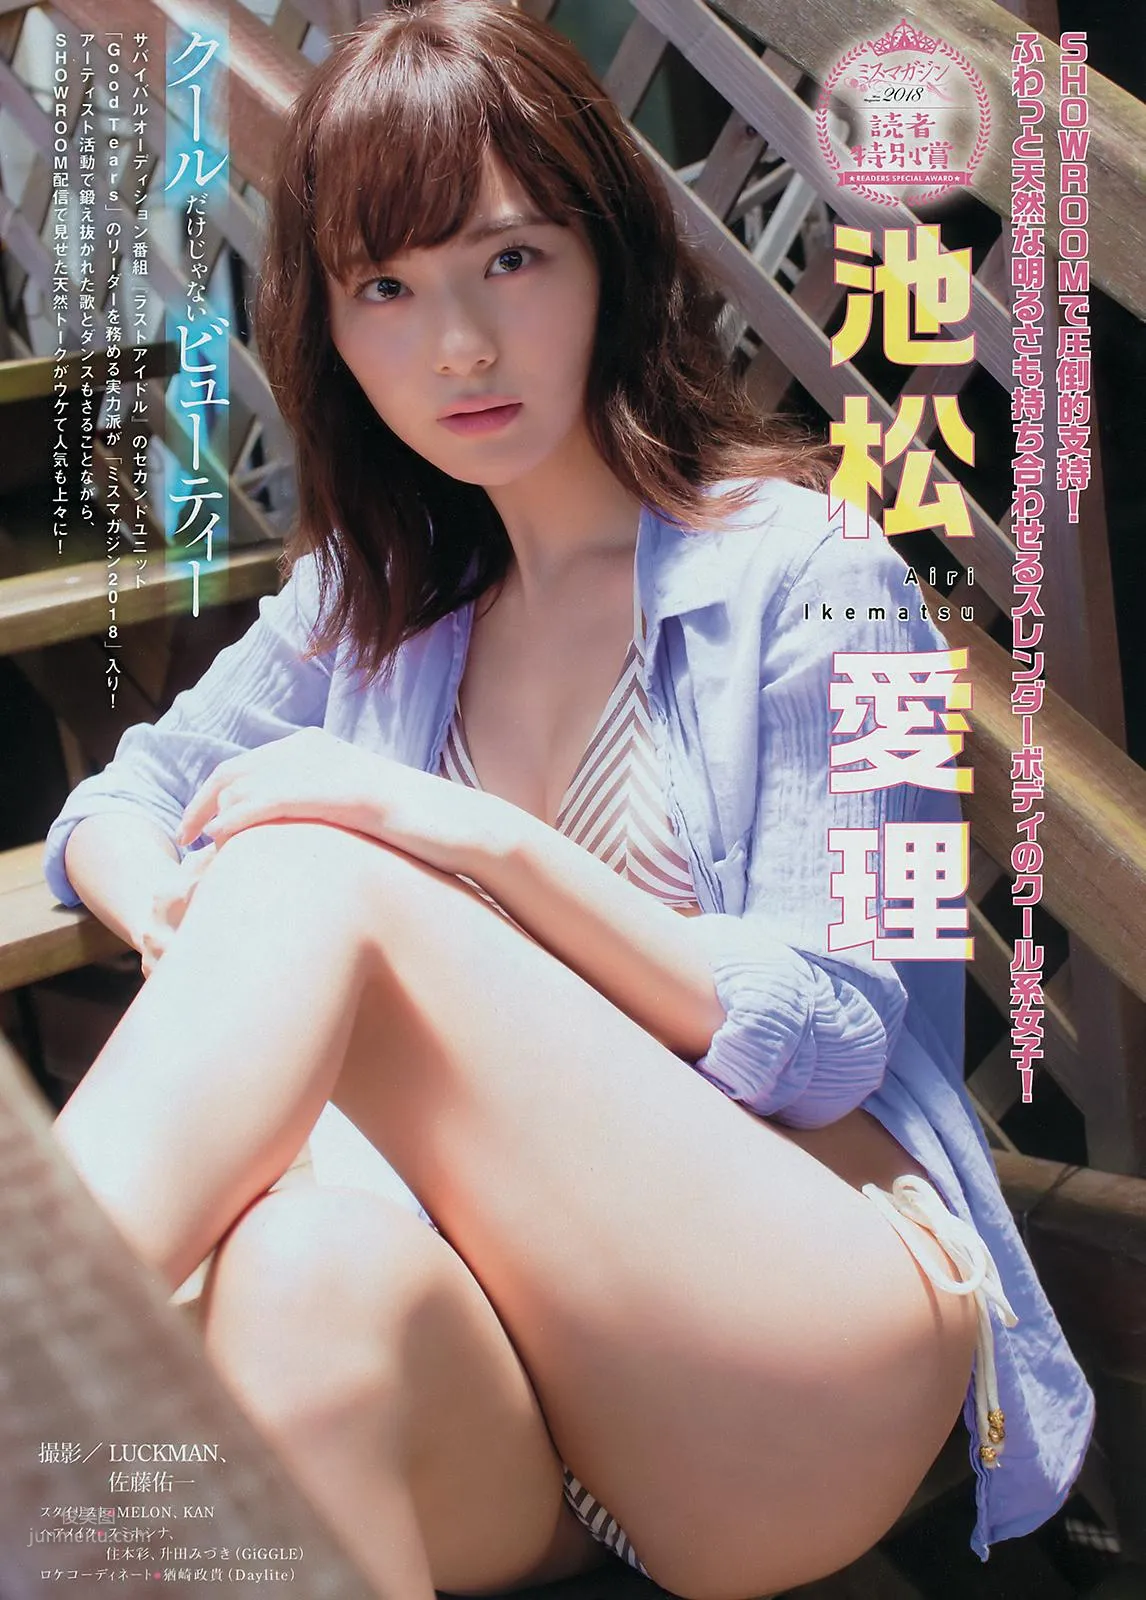 池松愛理- Young Magazine / 2018.08.13_0